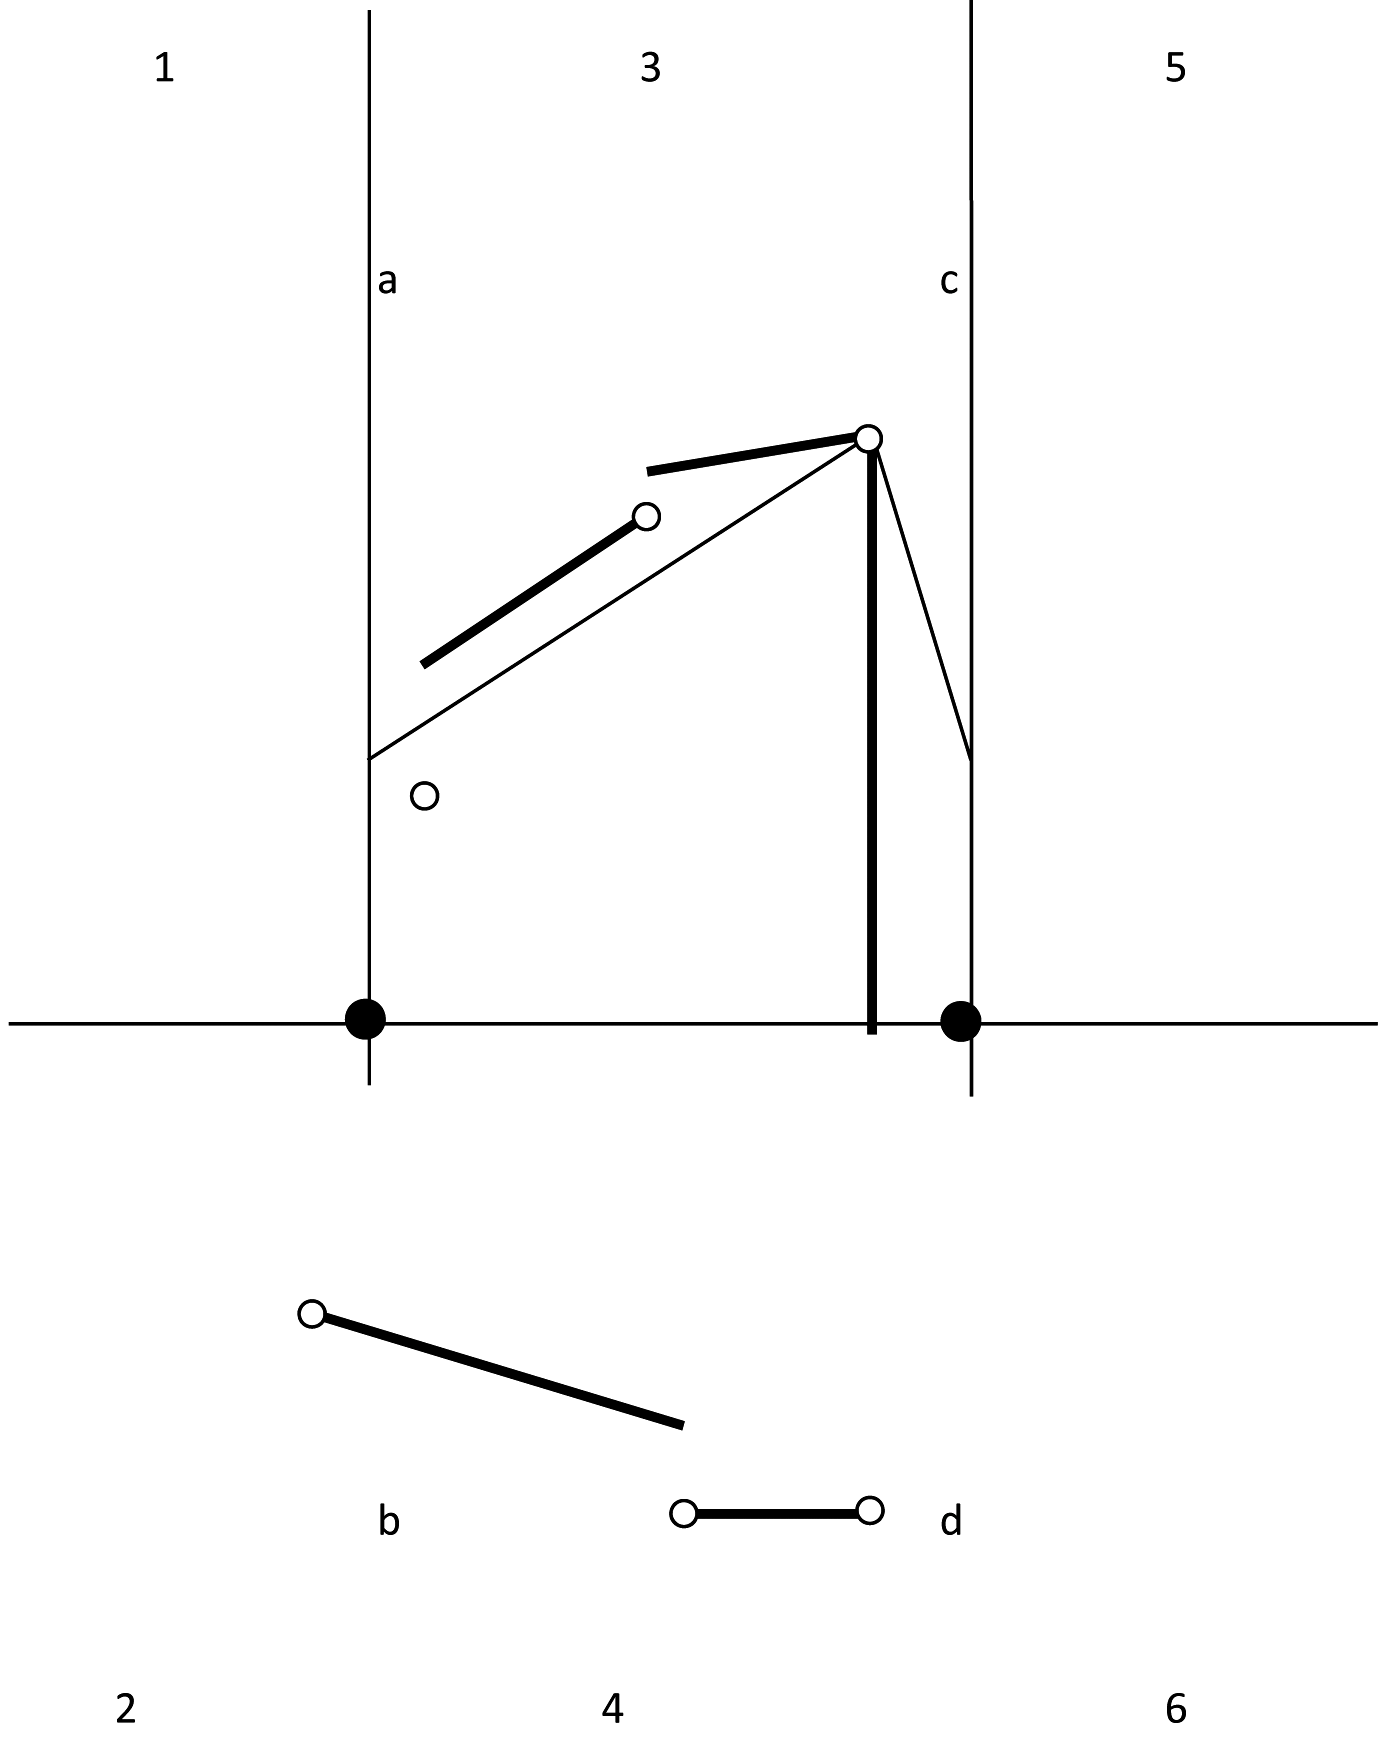 Figuur 4.11: Meervoudig scherm met zes hoekpunten. De linker omweg is aangegeven. Er is geen rechter omweg mogelijk in deze situatie.